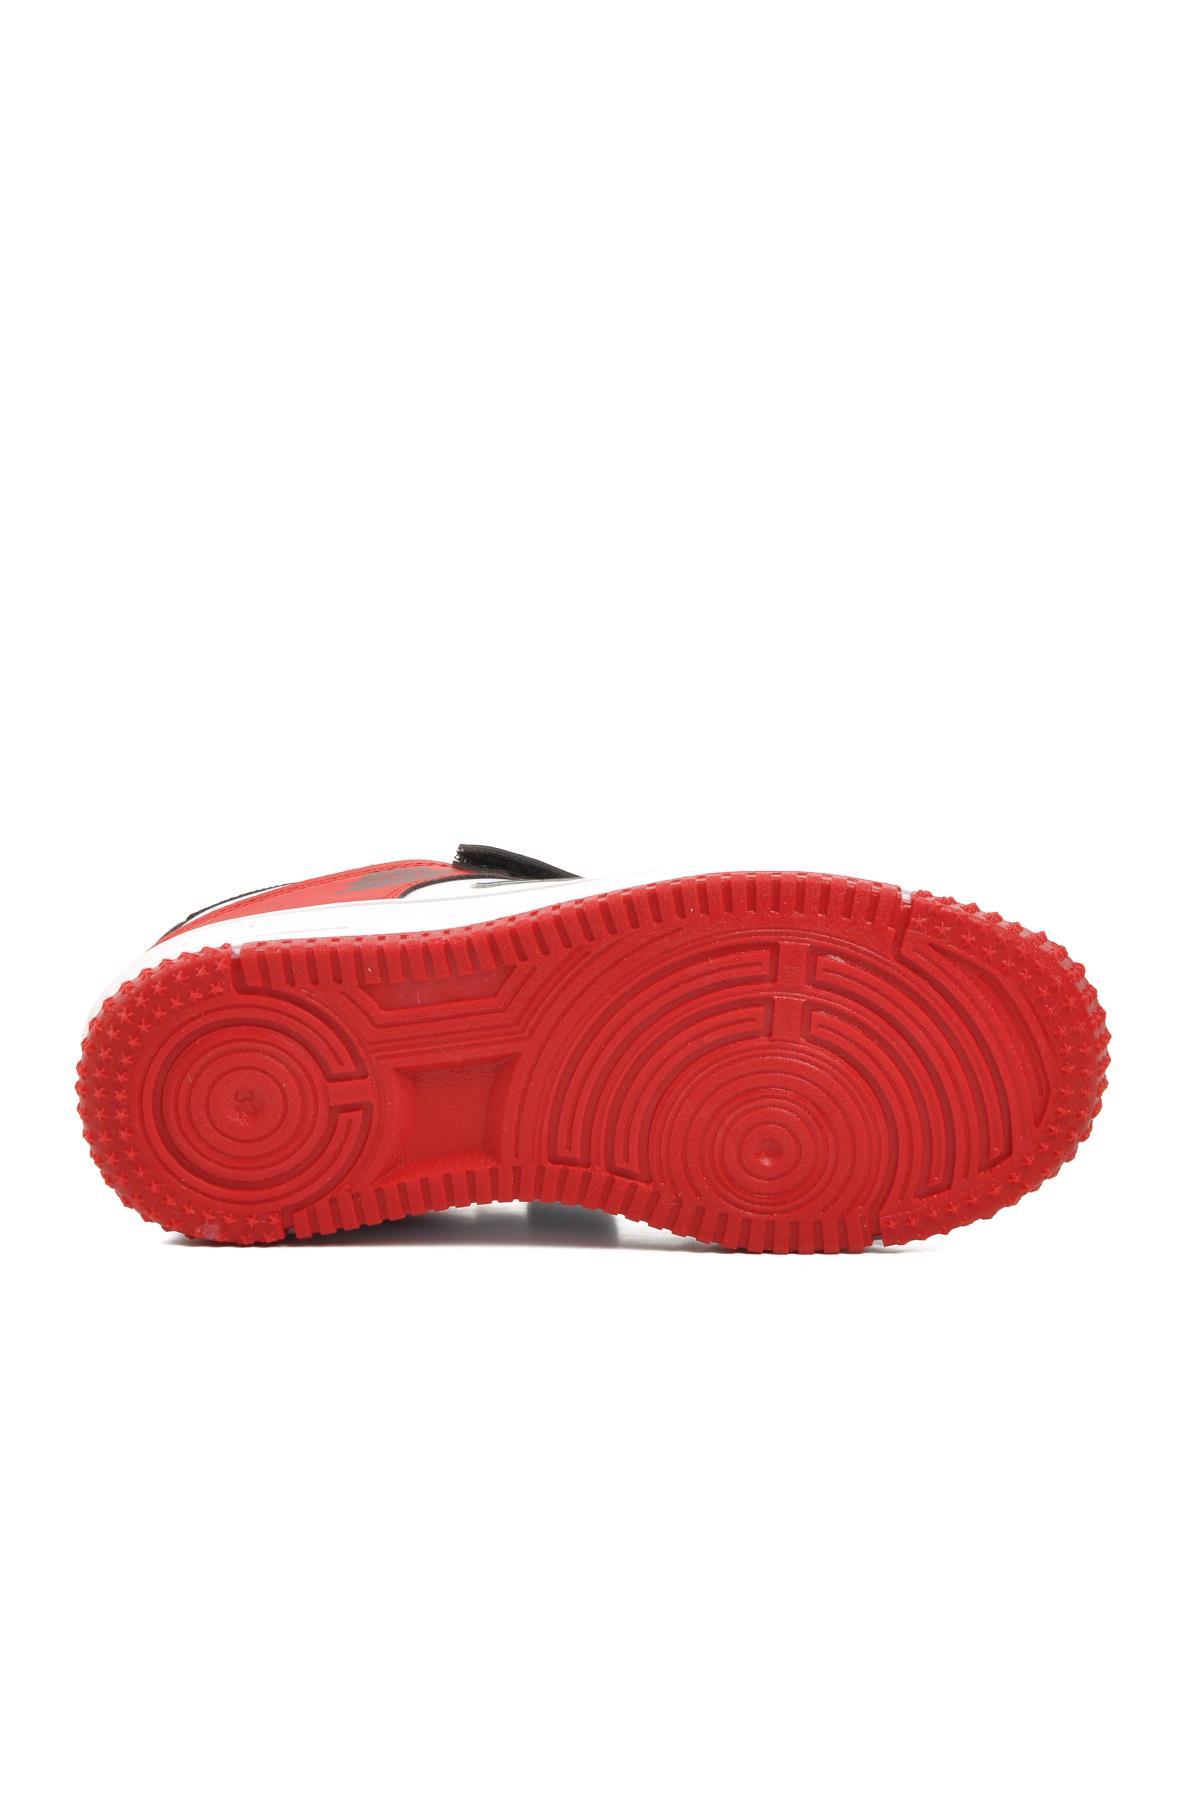 Aspor Haykat Kısa-F Kırmızı Cırtlı Çocuk Sneaker A SPOR Çocuk Spor Ayakkabı